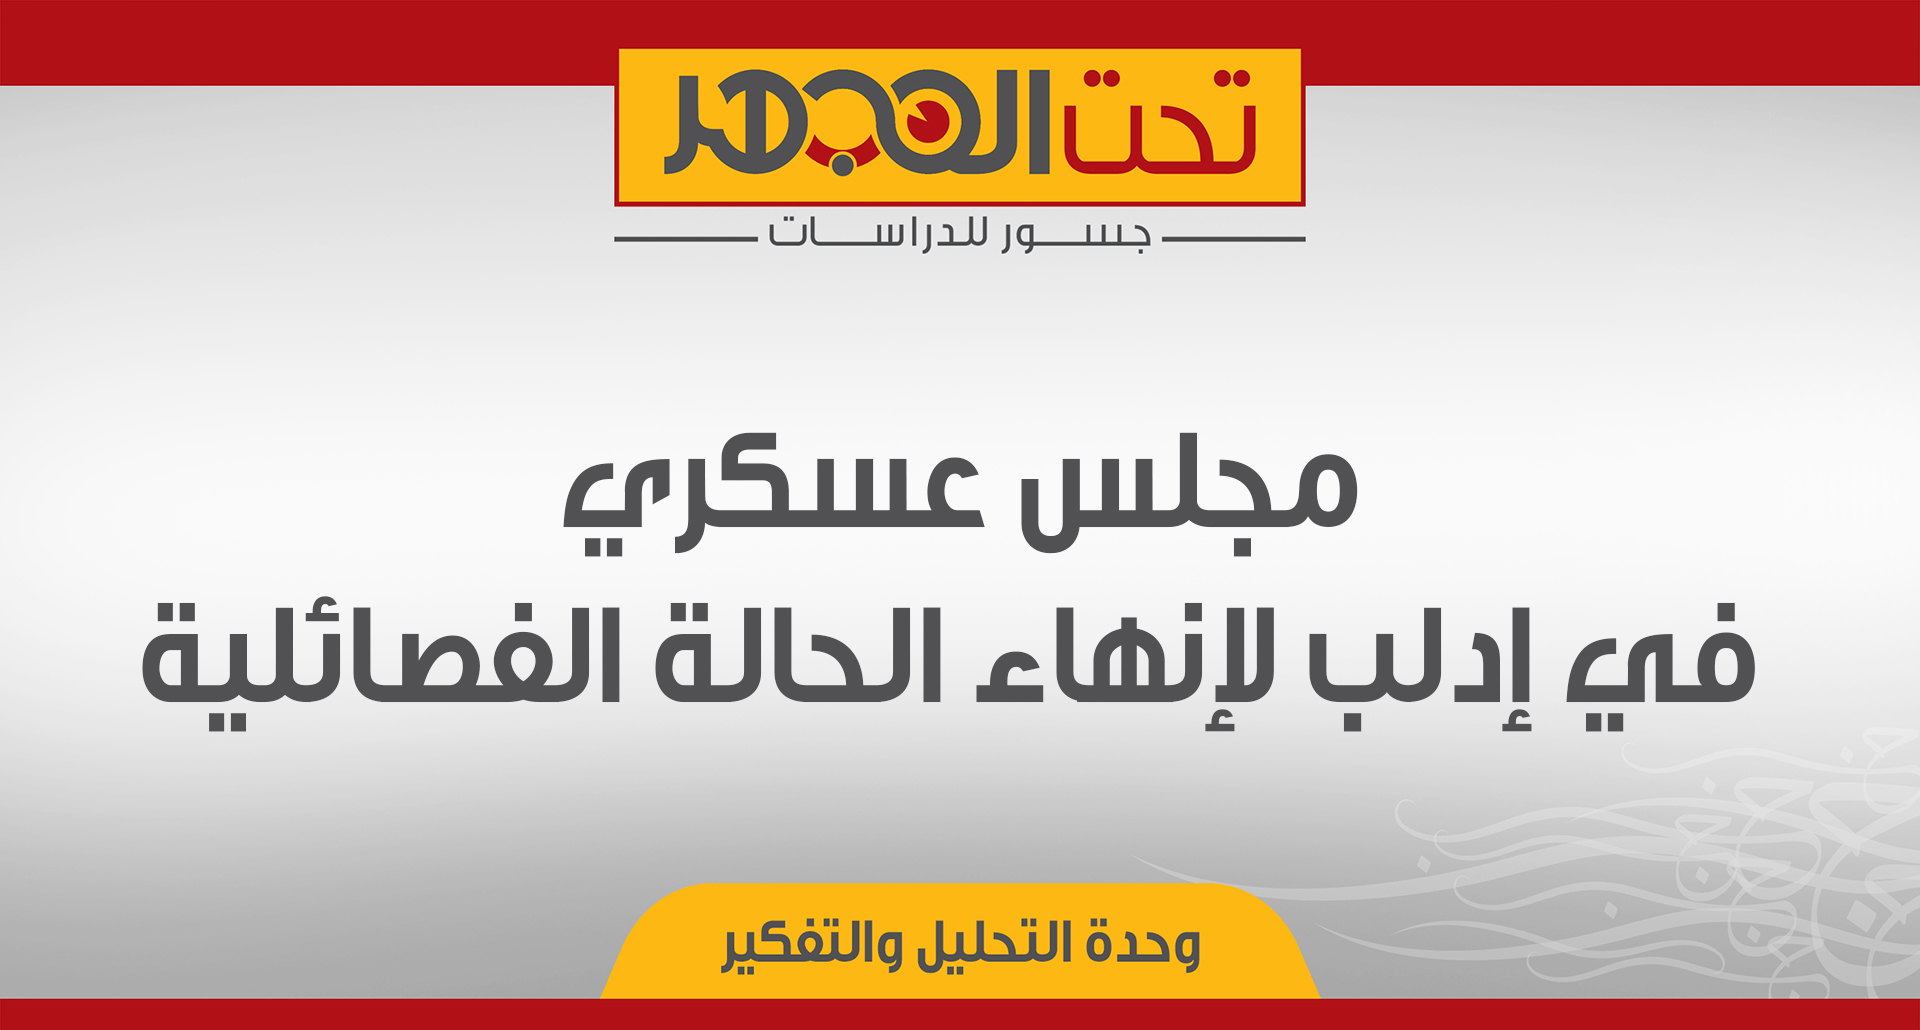 مجلس عسكري في إدلب لإنهاء الحالة الفصائلية